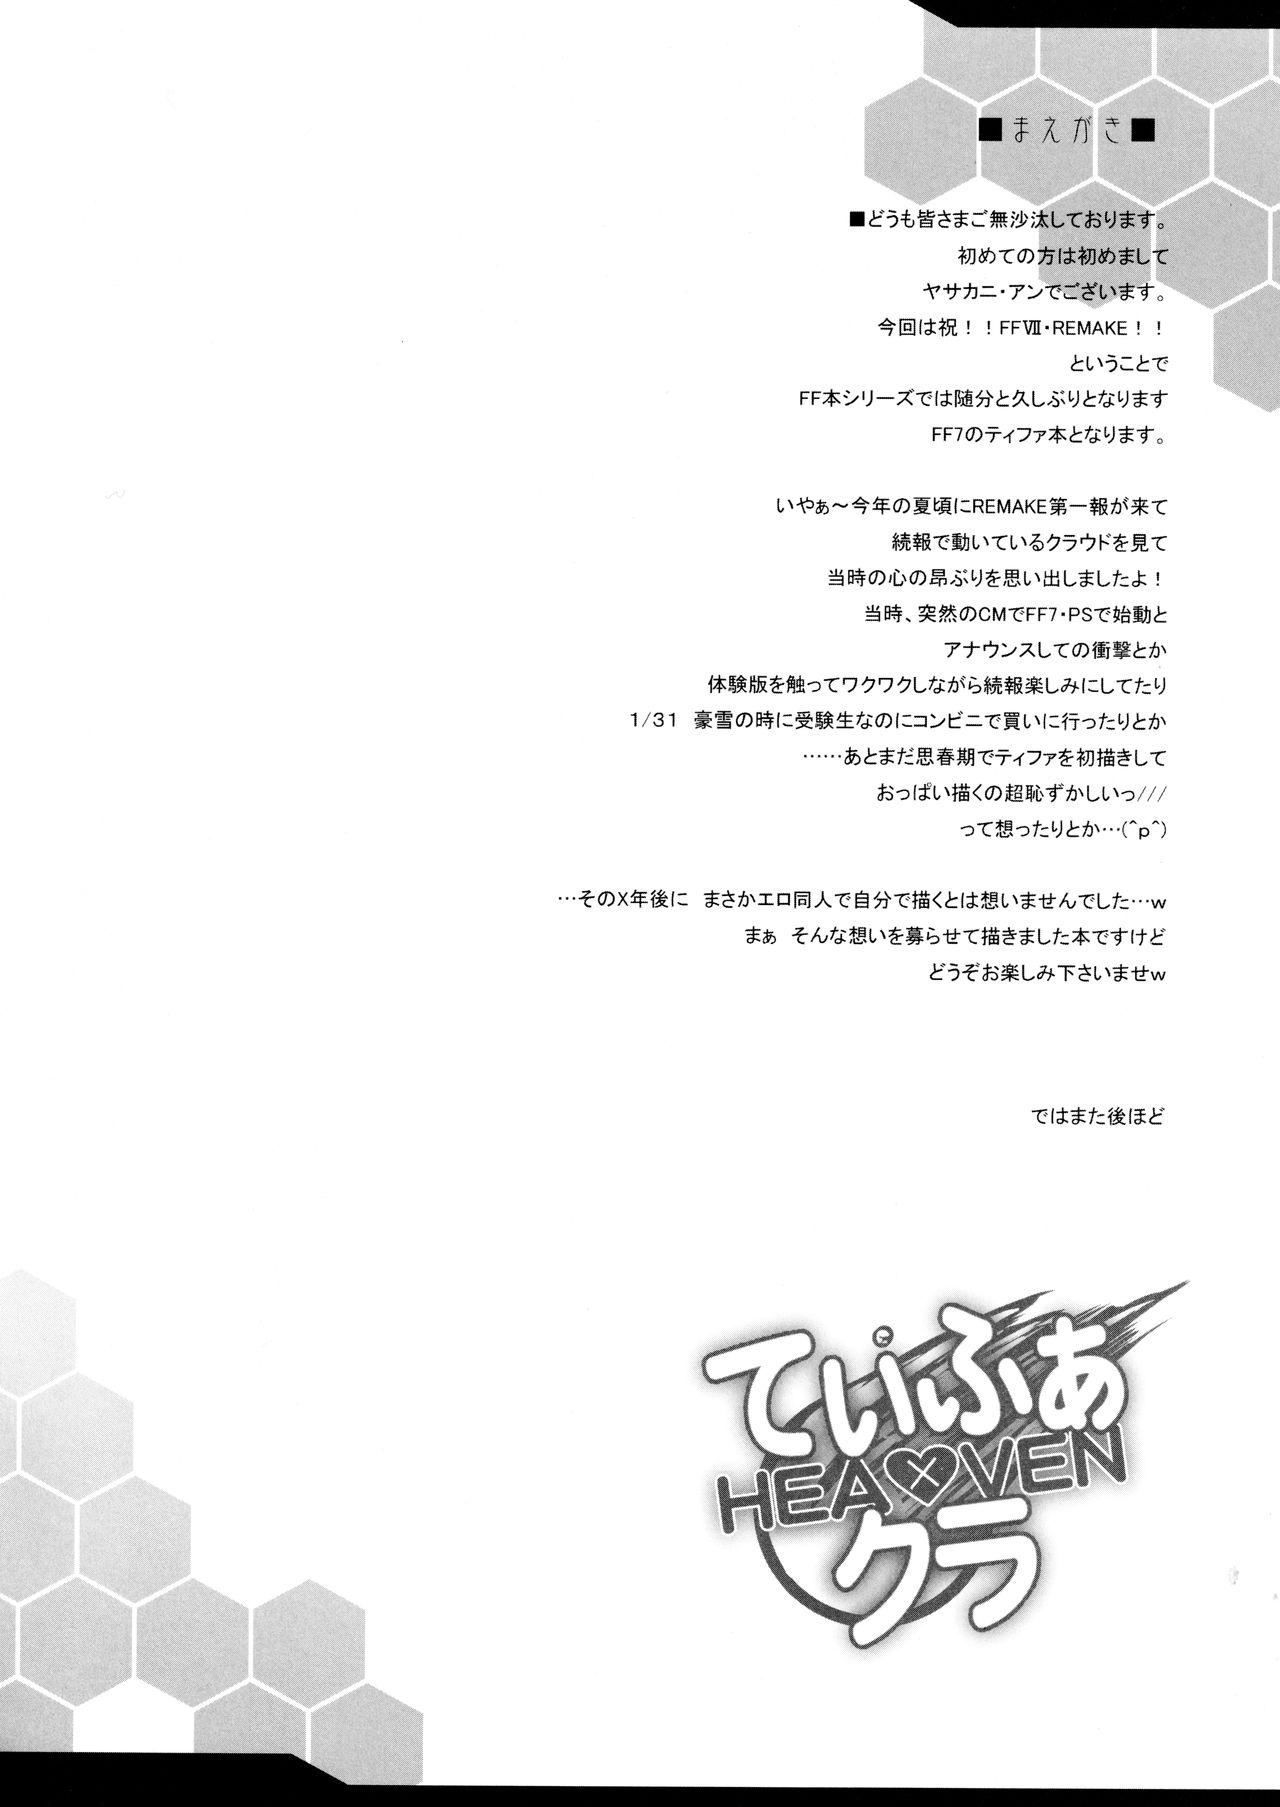 Mamadas Tifa x Cloud ・ Heaven - Final fantasy vii Culos - Page 3